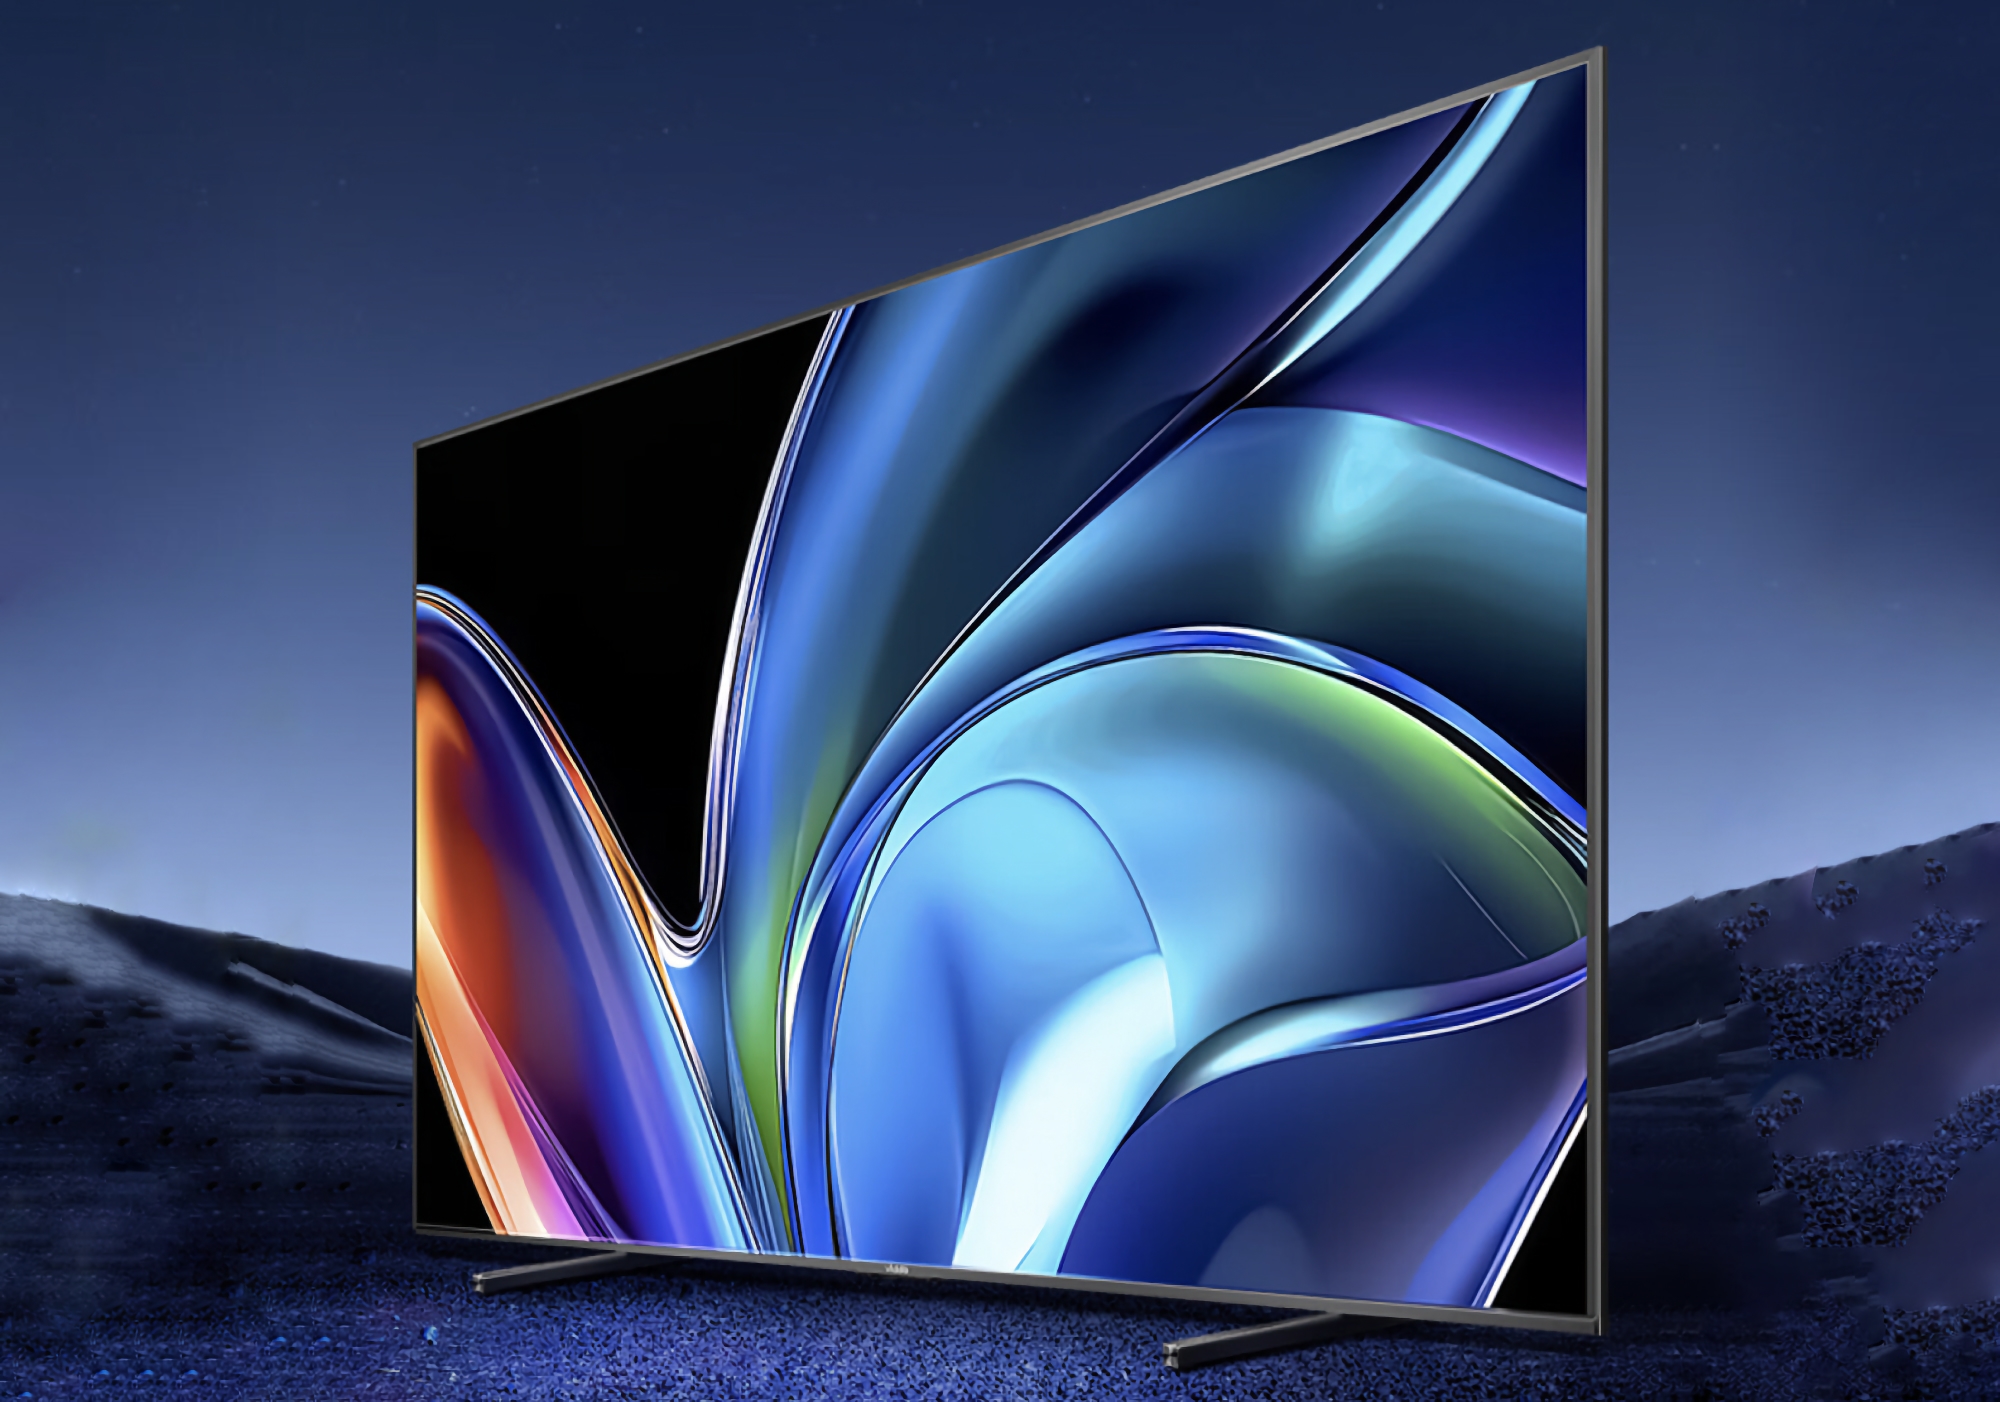 Hisense Vidda NEW S100 Pro: 100-tums smart-TV med 144Hz-stöd och en prislapp på $ 1360 